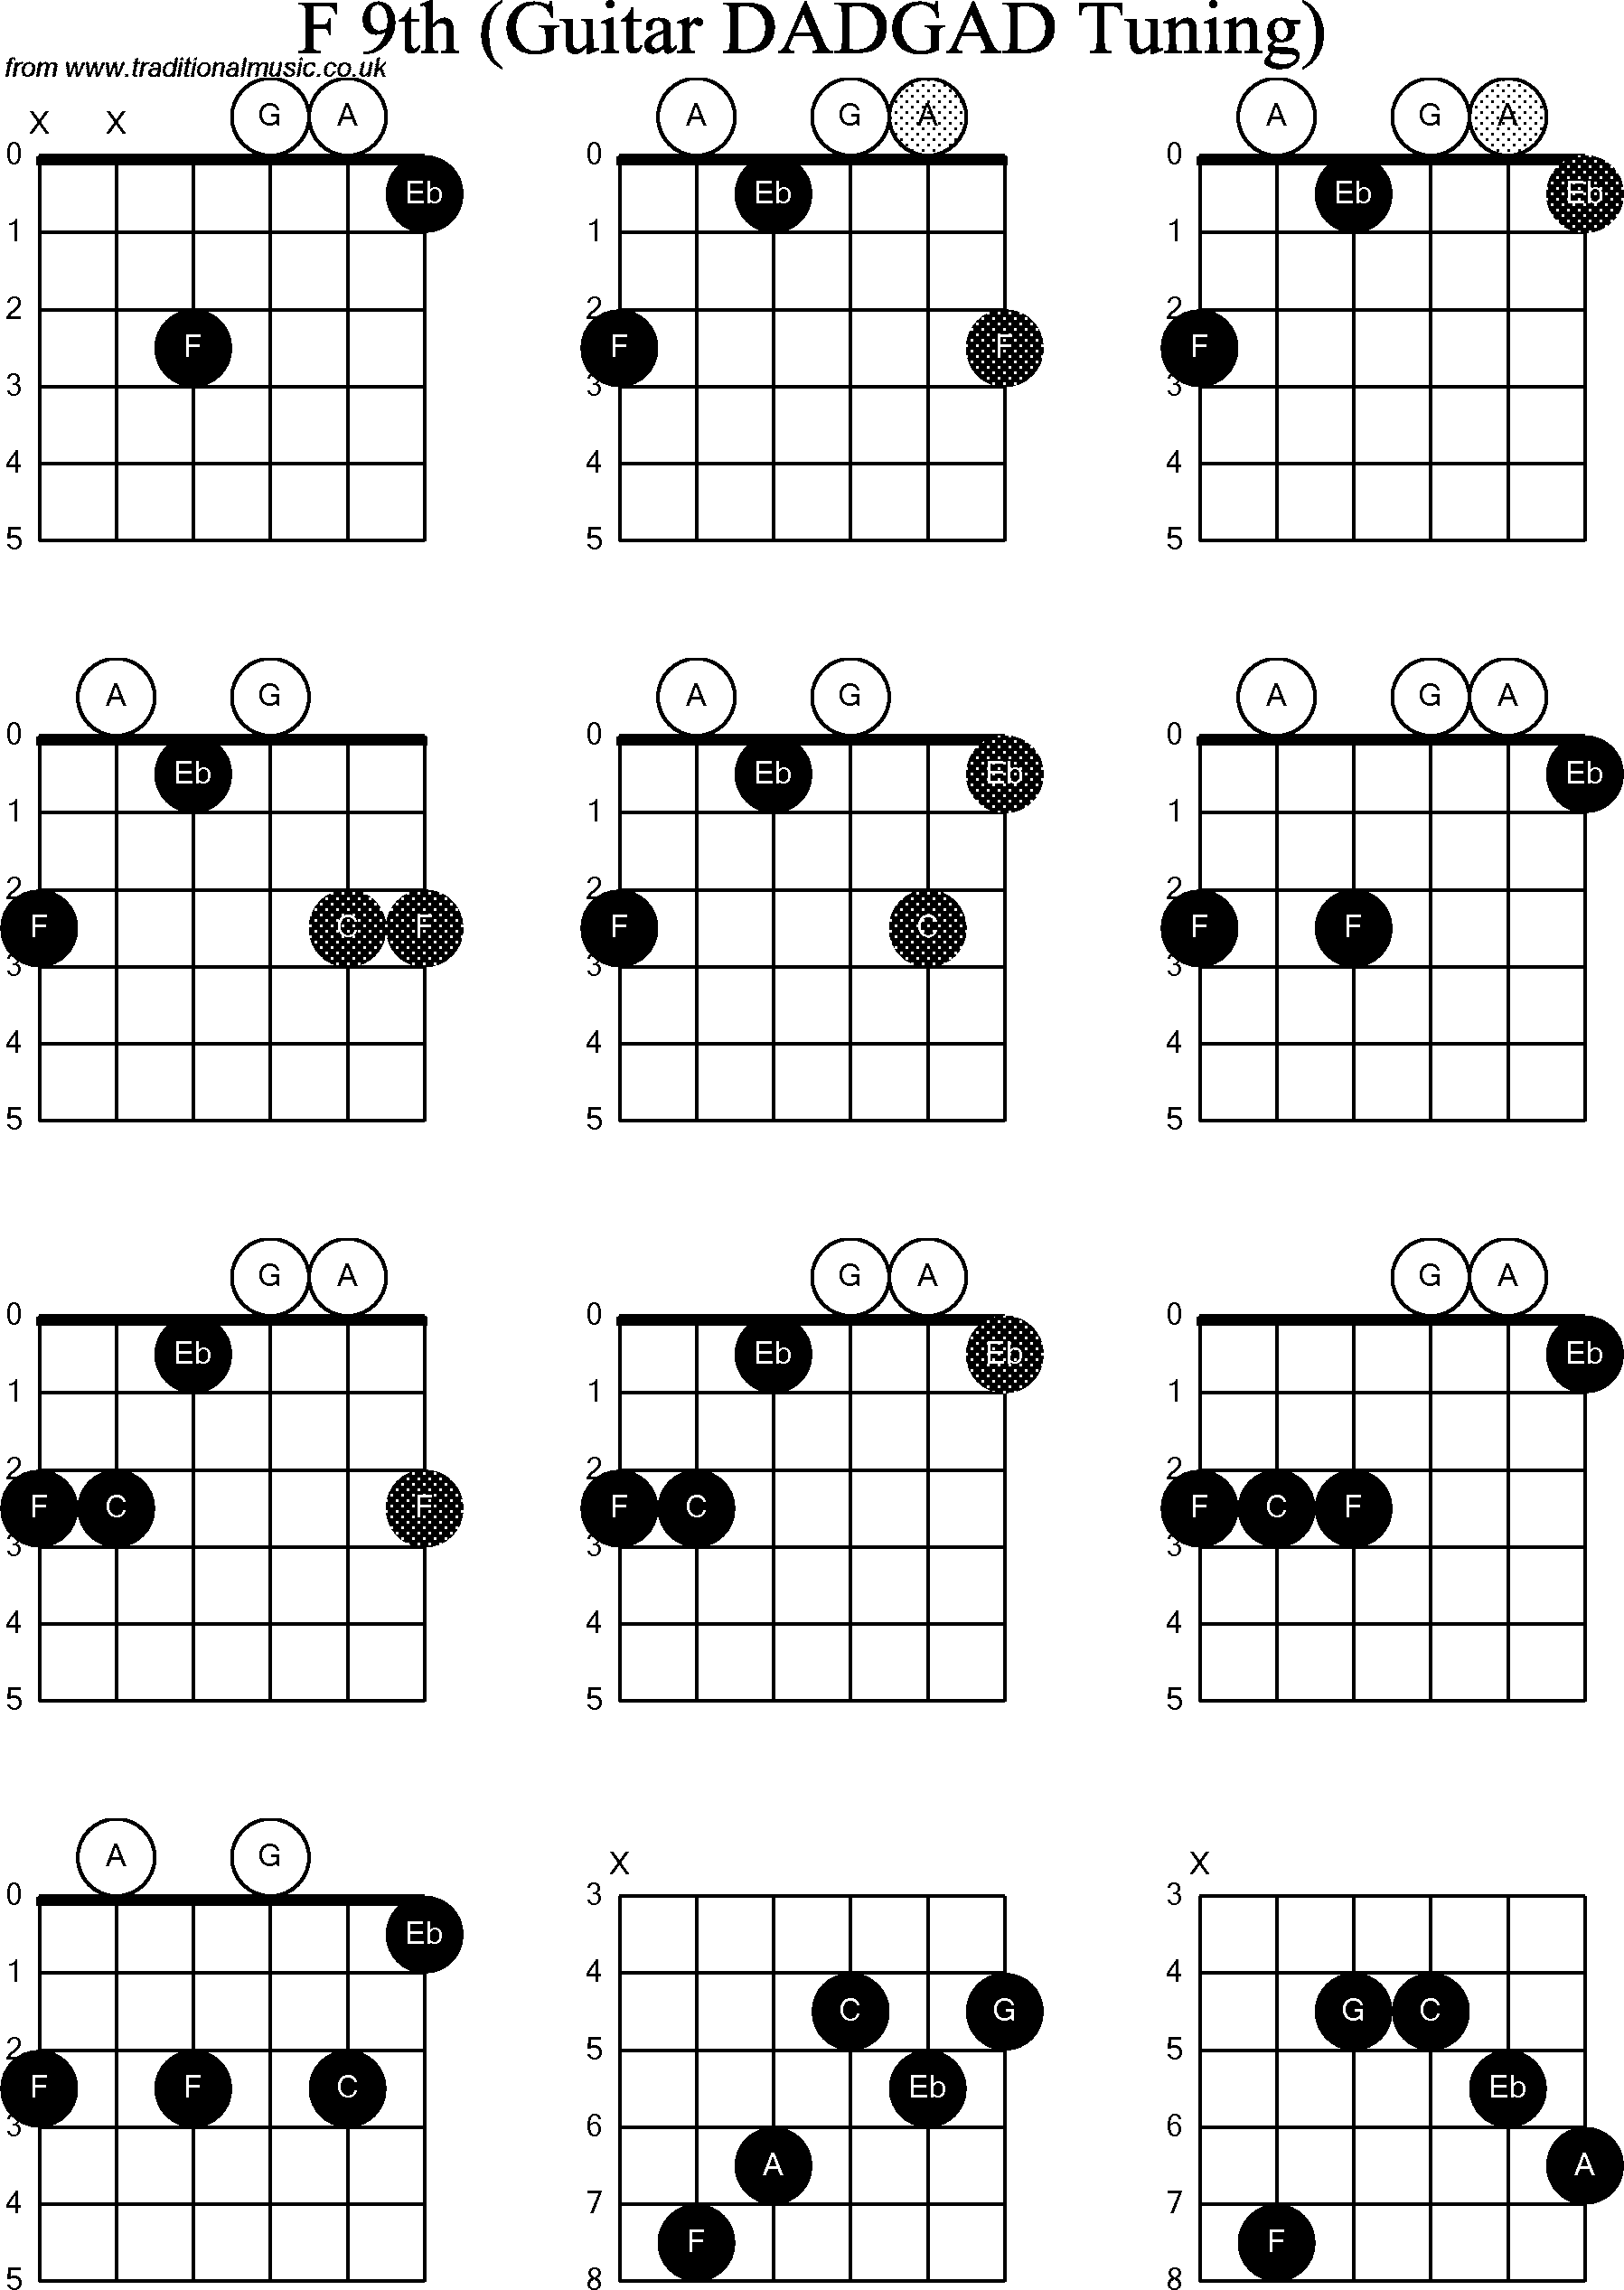 Chord Diagrams D Modal Guitar Dadgad F9th